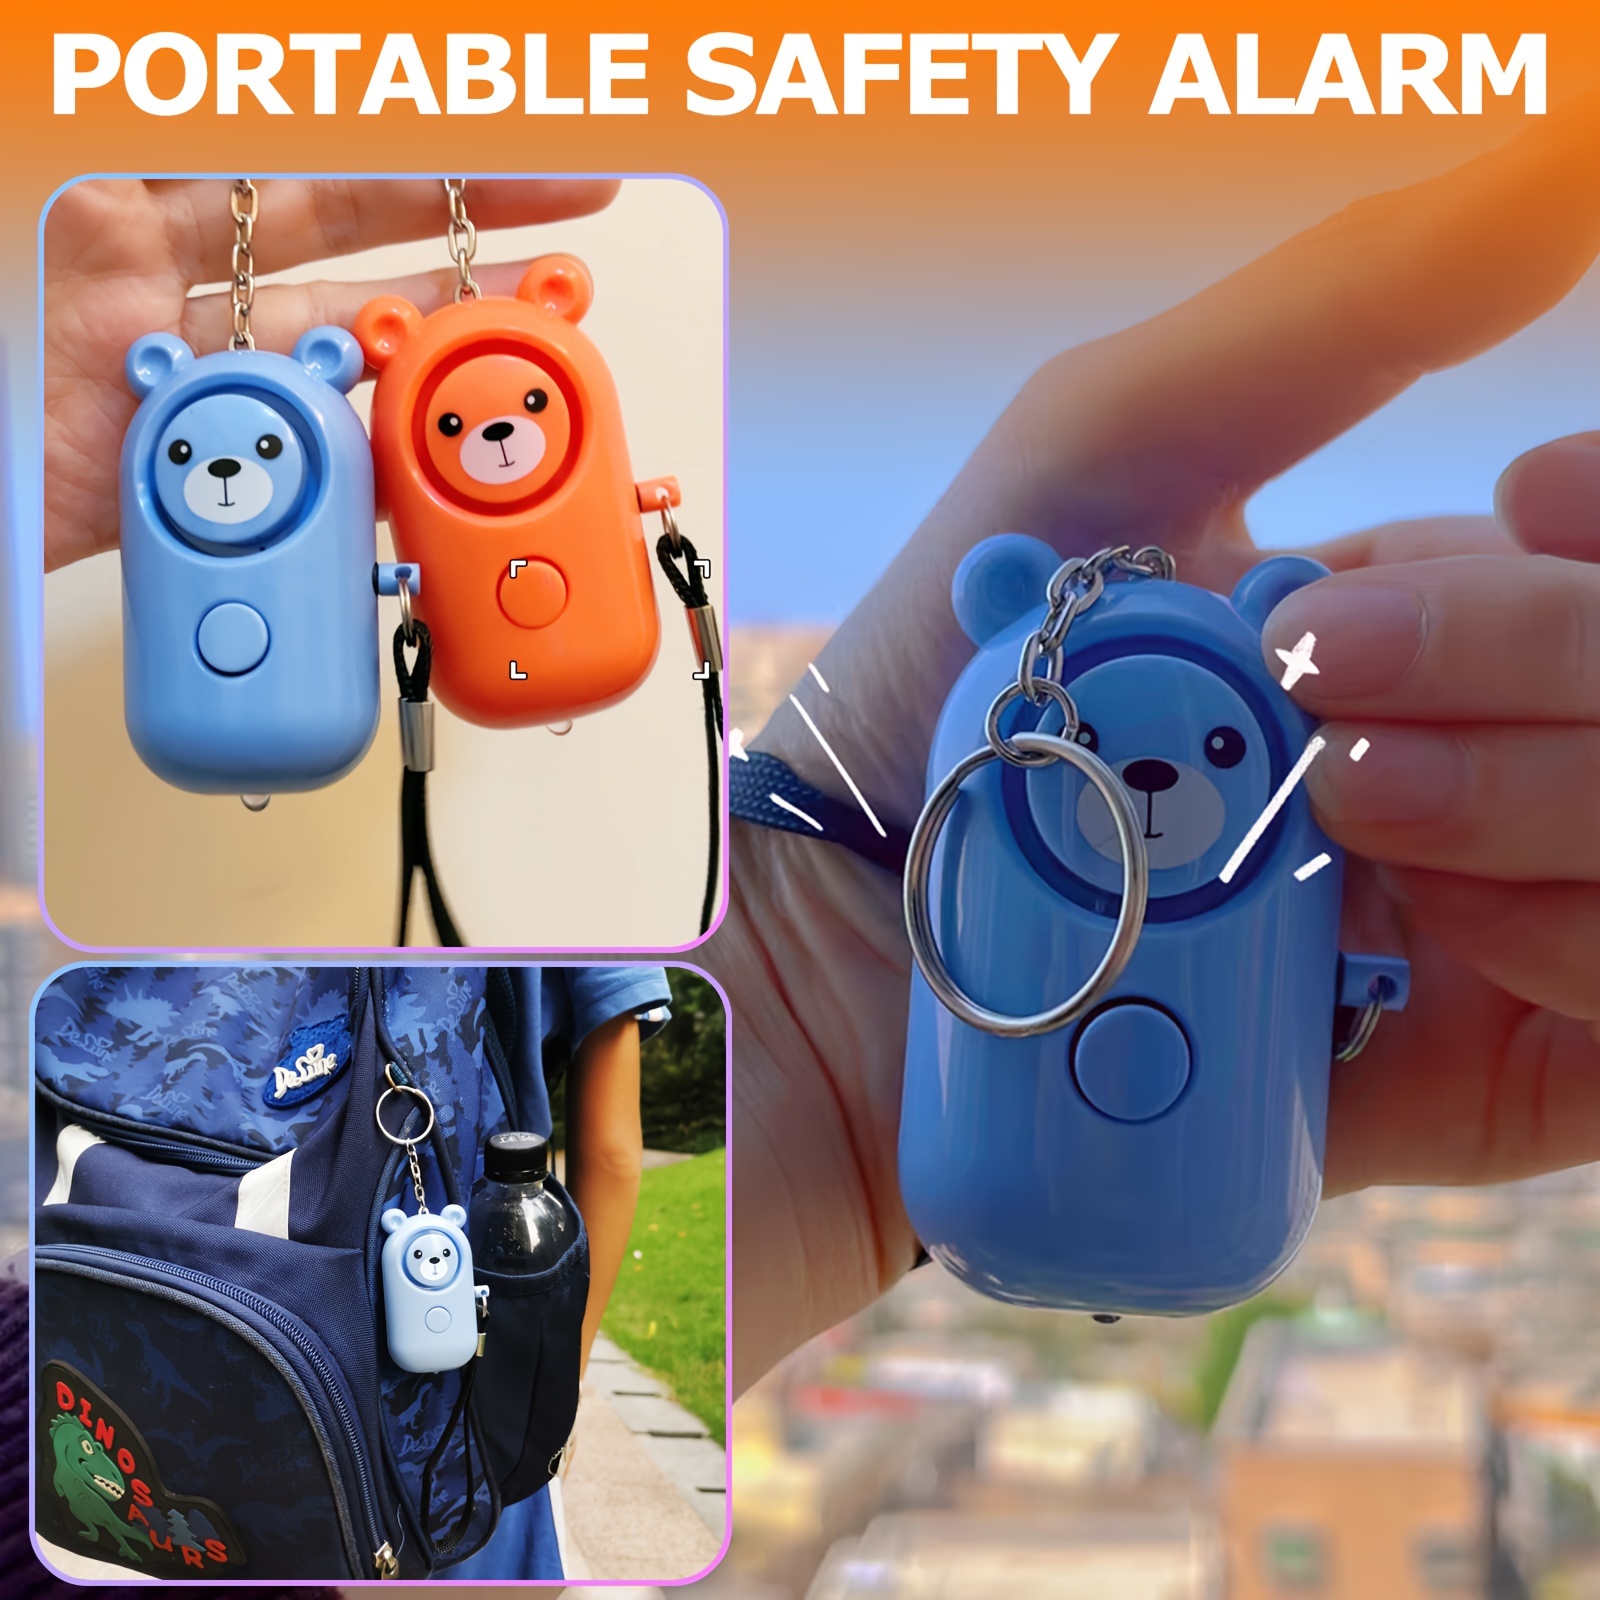 Alarme personnelle, lot de 3 alarmes de sécurité porte-clés avec lampe de  poche LED, mini 140DB d'autodéfense, alarmes de sécurité pour les femmes,  les enfants et les marcheurs de nuit, piles incluses